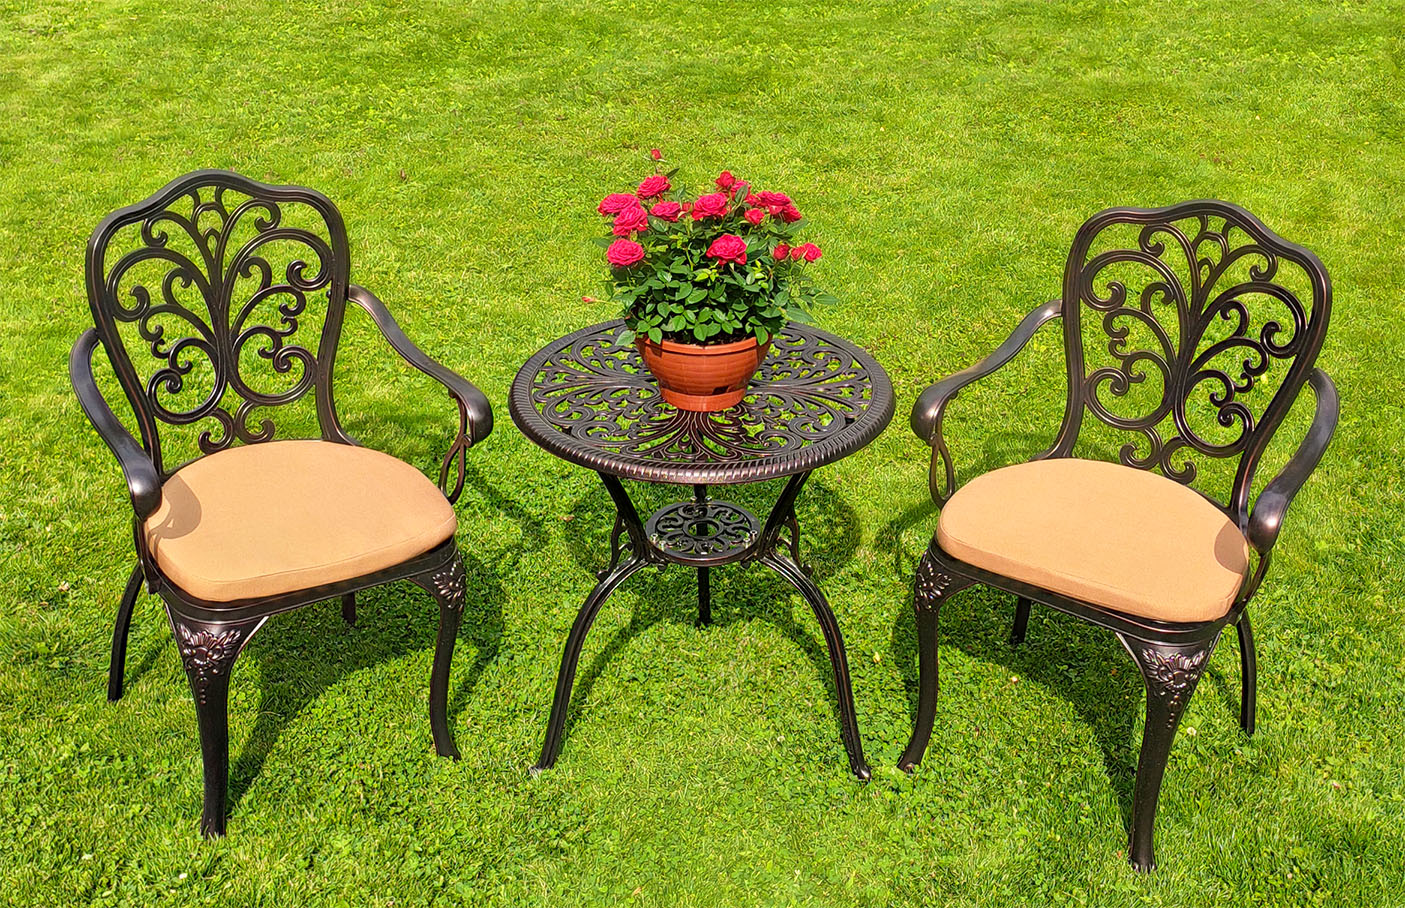 Ажурное садовое кресло прованс, комплект уличной садовой мебели, кружевной стол и кресла для дачи и сада, мебель для летних веранд кафе и ресторанов, чугунная мебель